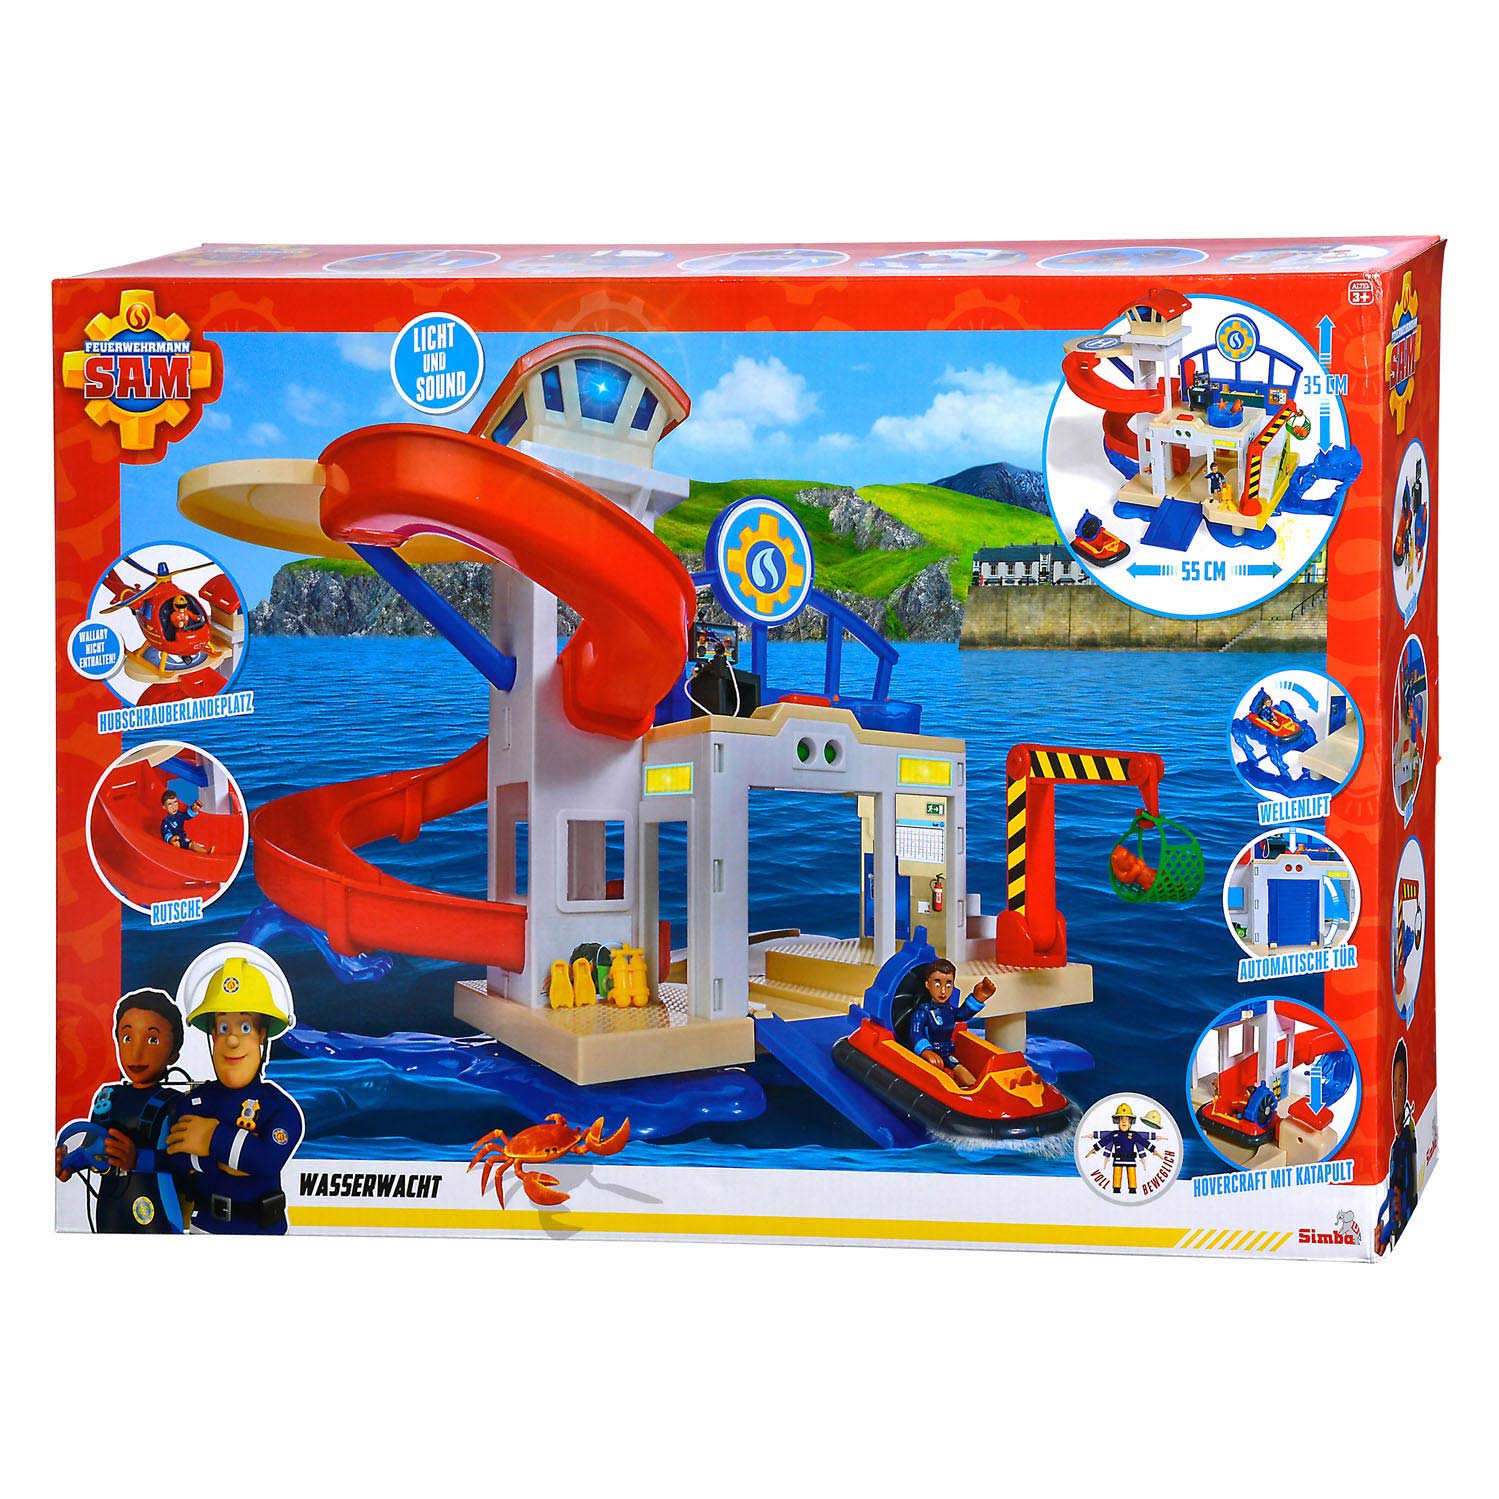 Brandweerman Sam Ocean Rescue Station